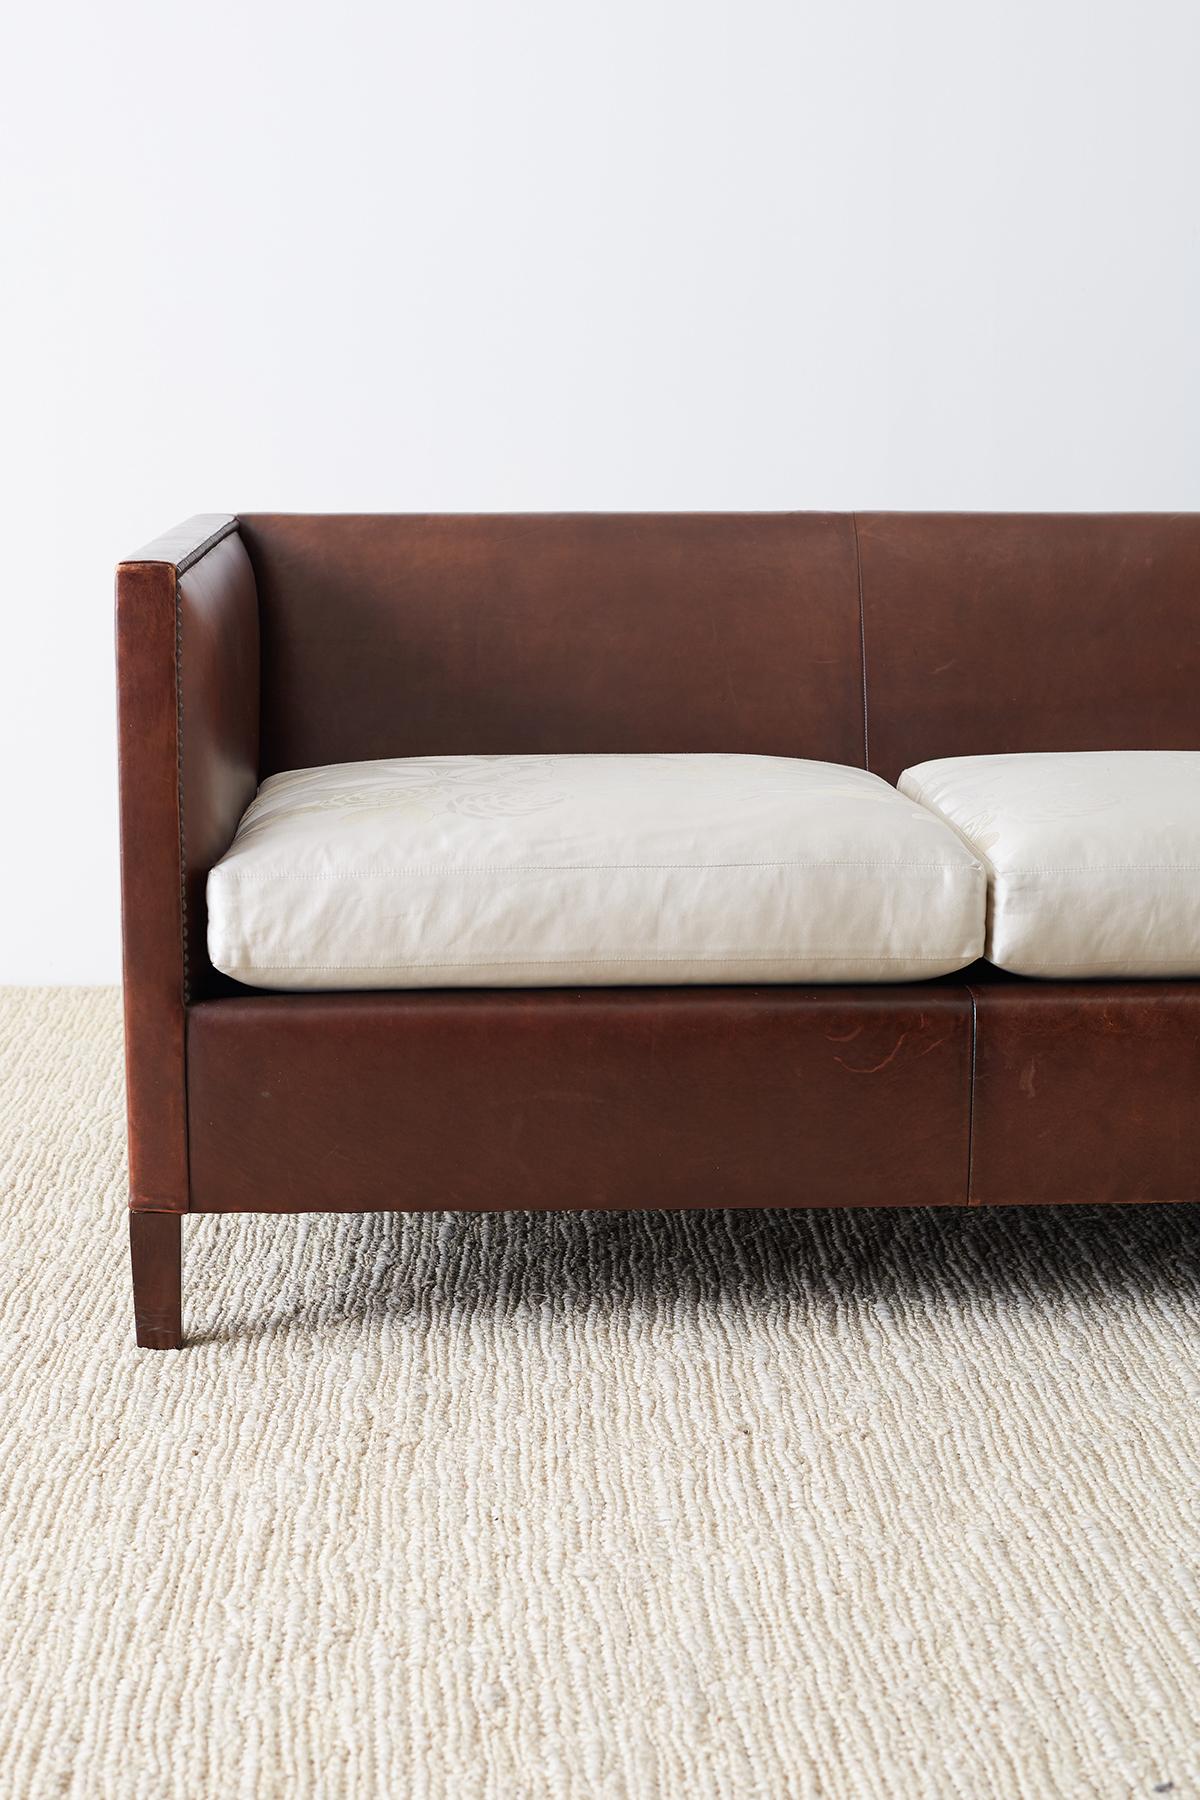 Modernist Leather Three-Seat Case Sofa (amerikanisch)